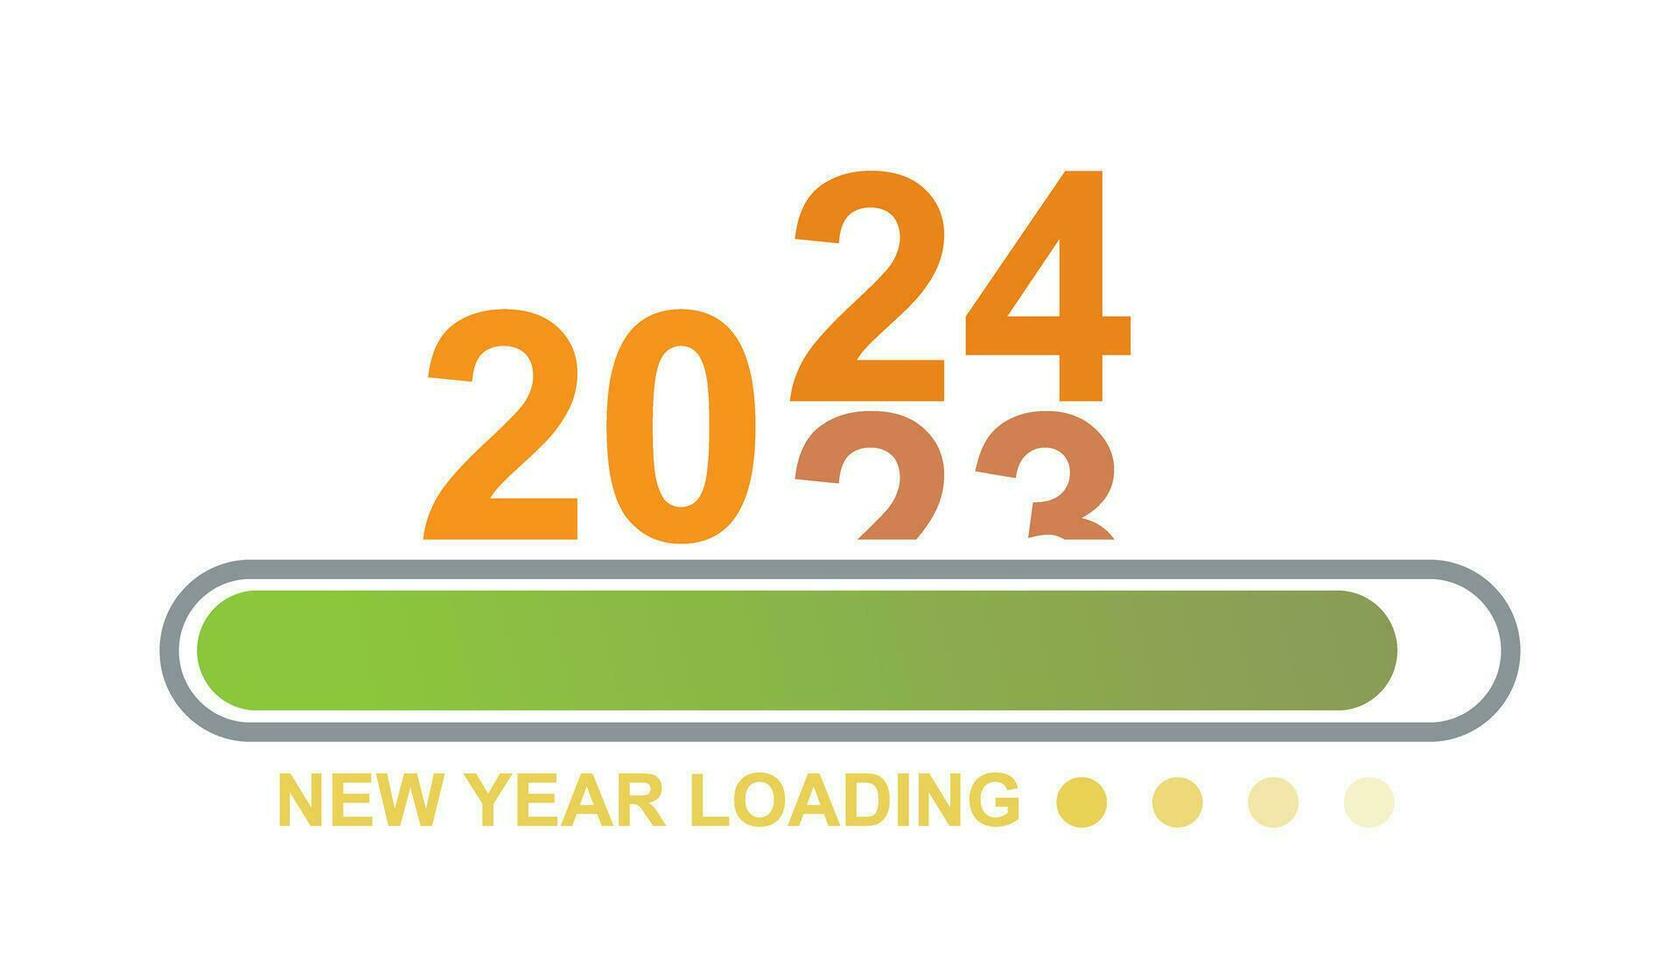 läser in 2023 till 2024 framsteg bar. Lycklig ny år 2024 Välkommen. år ändring från 2023 till 2024. slutet av 2023 och startande av 2024. nästan nå ny år lyckönskningar 2024. Start mål och planera. vektor